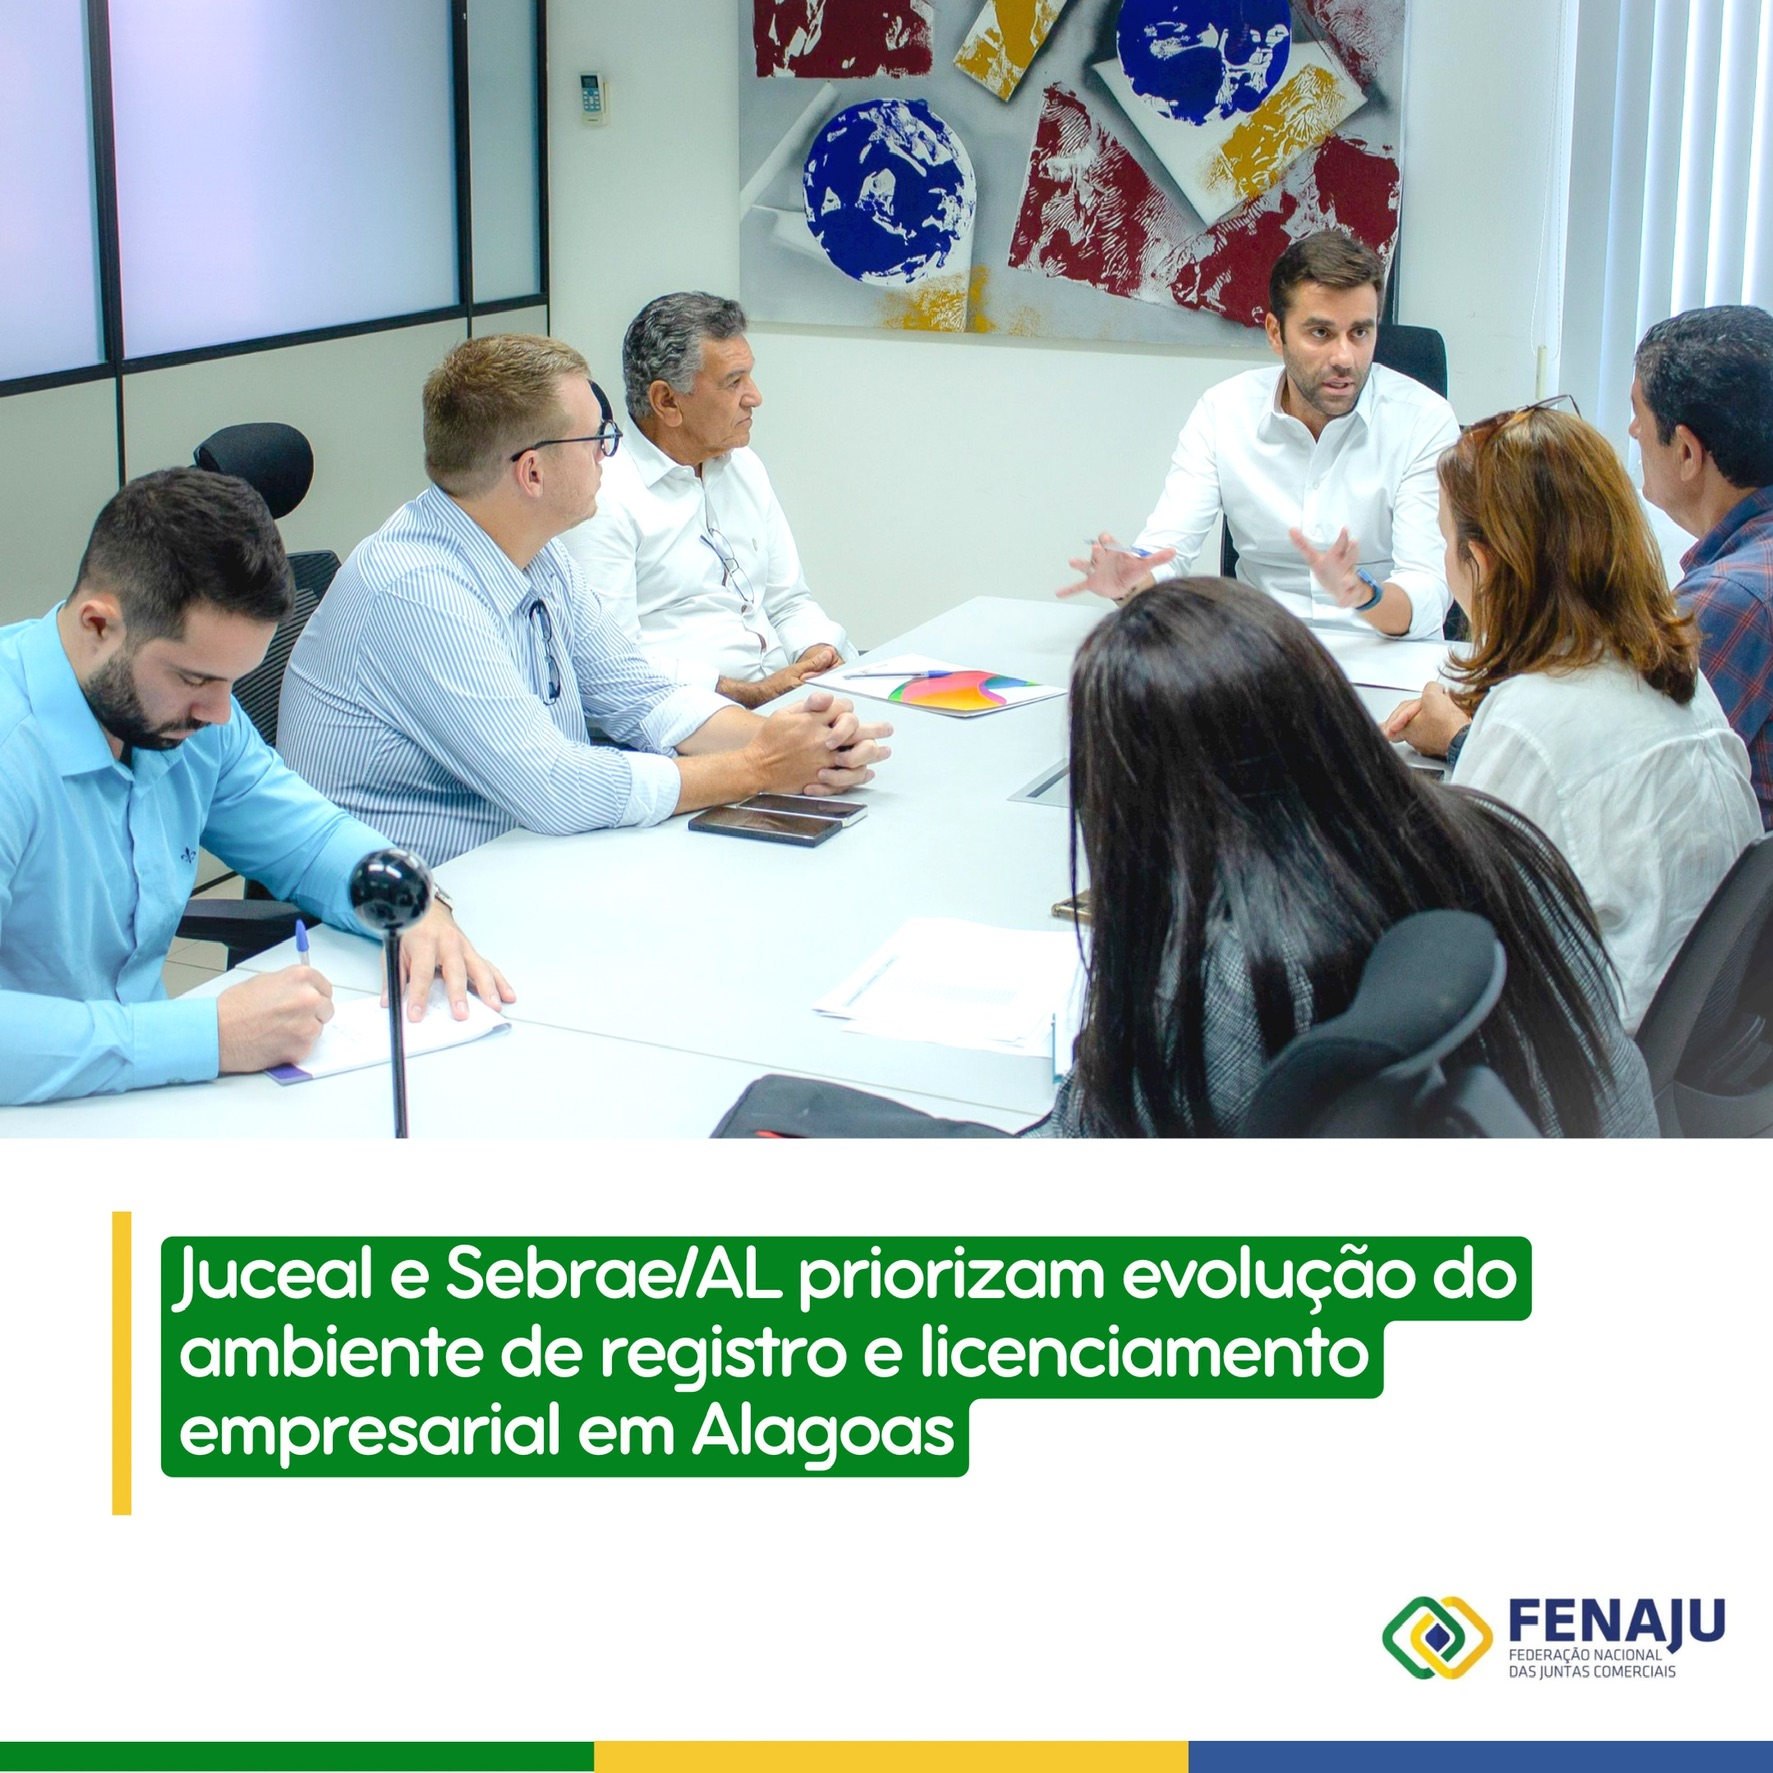 Read more about the article Juceal e Sebrae/AL priorizam evolução do ambiente de registro e licenciamento empresarial em Alagoas